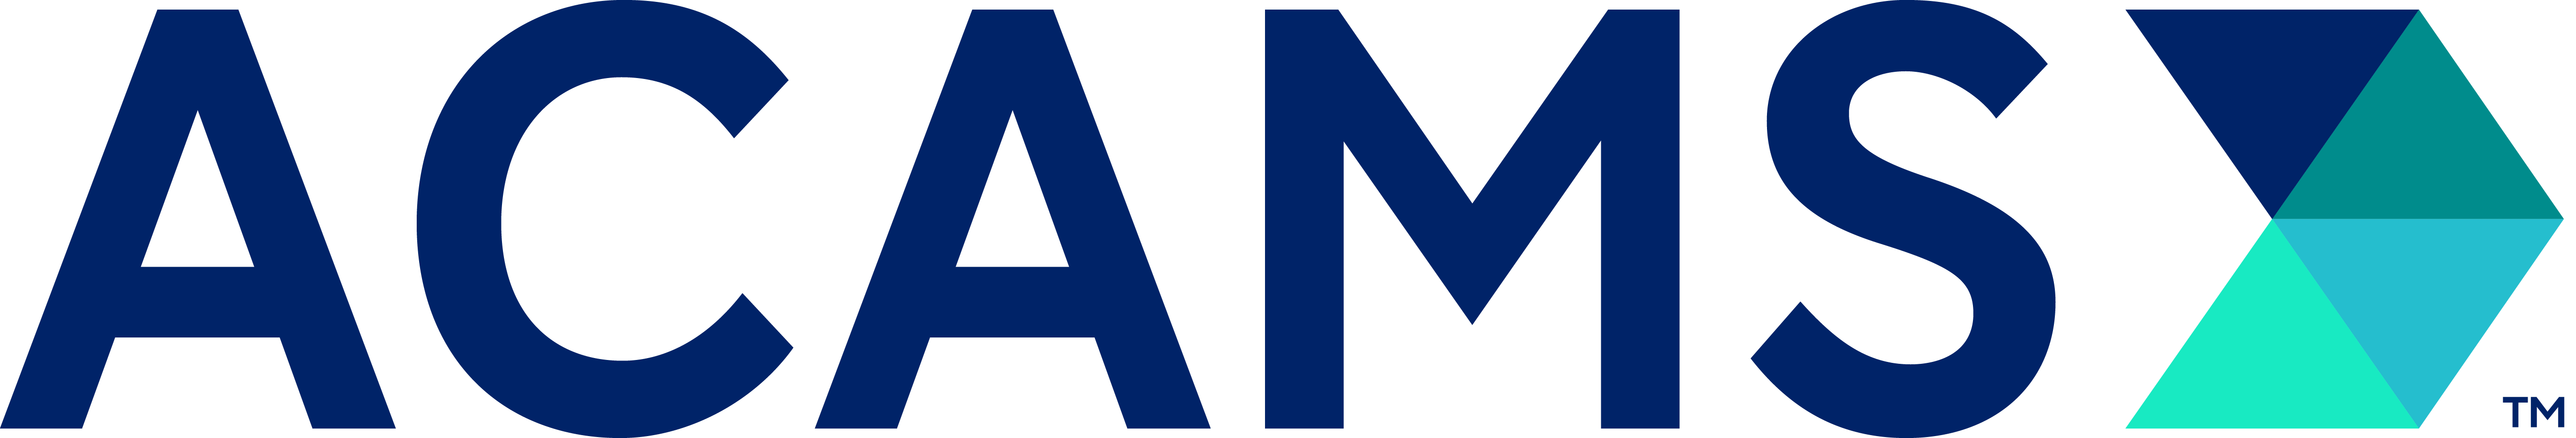 ACAMS New Logo_TM_RGB[1].png